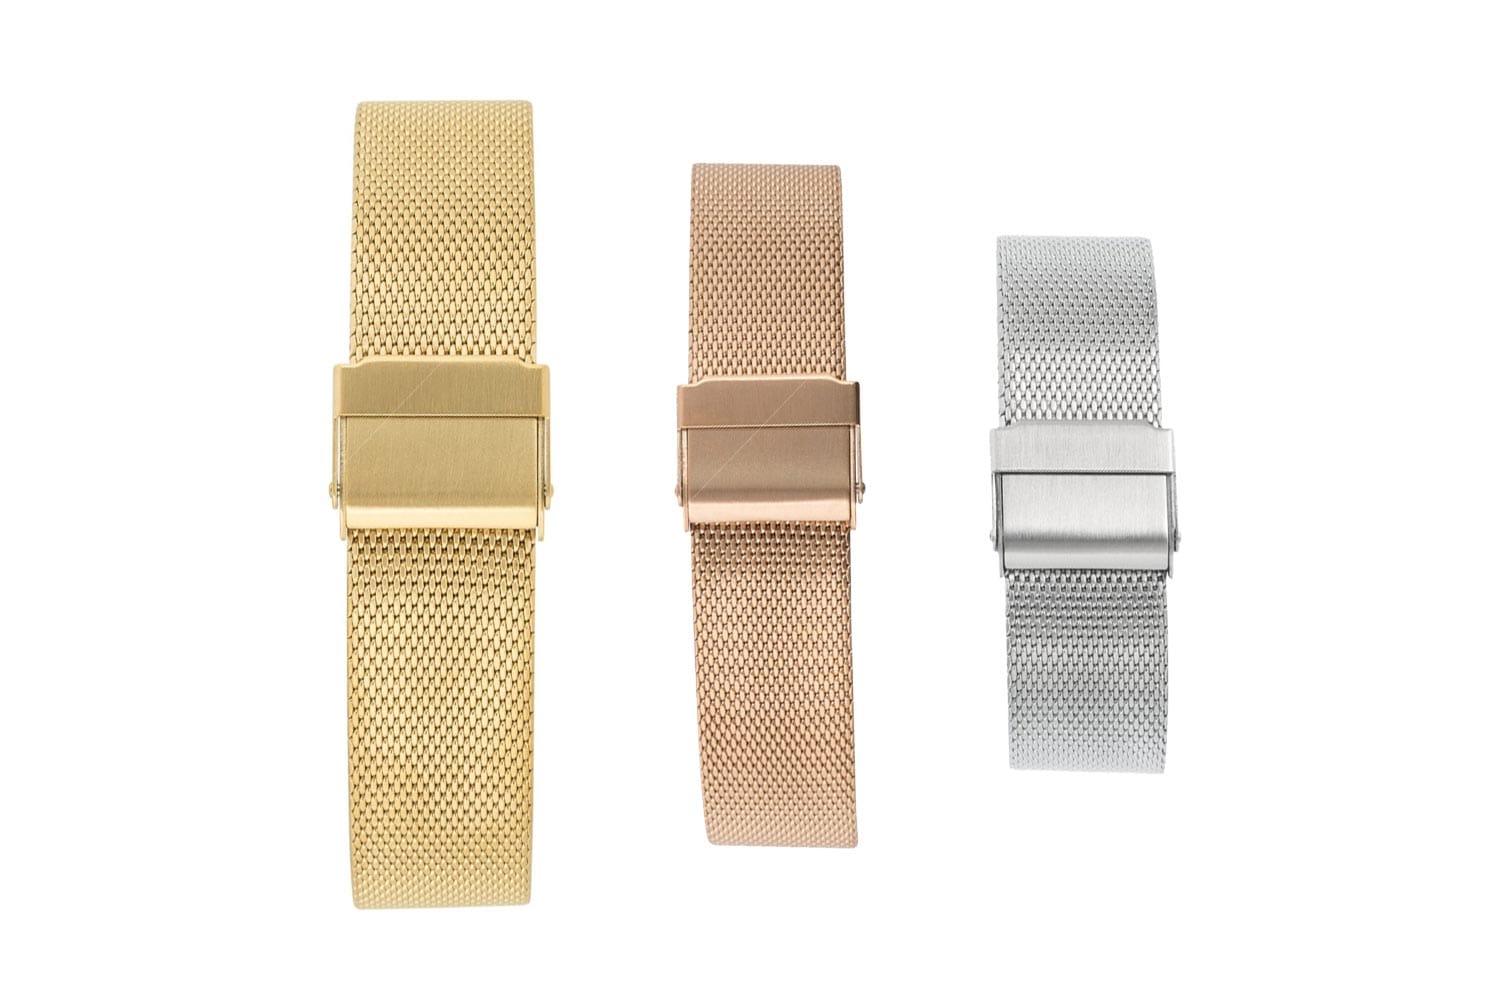 Das Armband sollte farblich zur Uhr passen. Bei metallenen Milanaise-Armbändern kann man auf das gleiche Material setzen oder, wie aktuell angesagt, mit Bicolor-Kontrasten spielen.